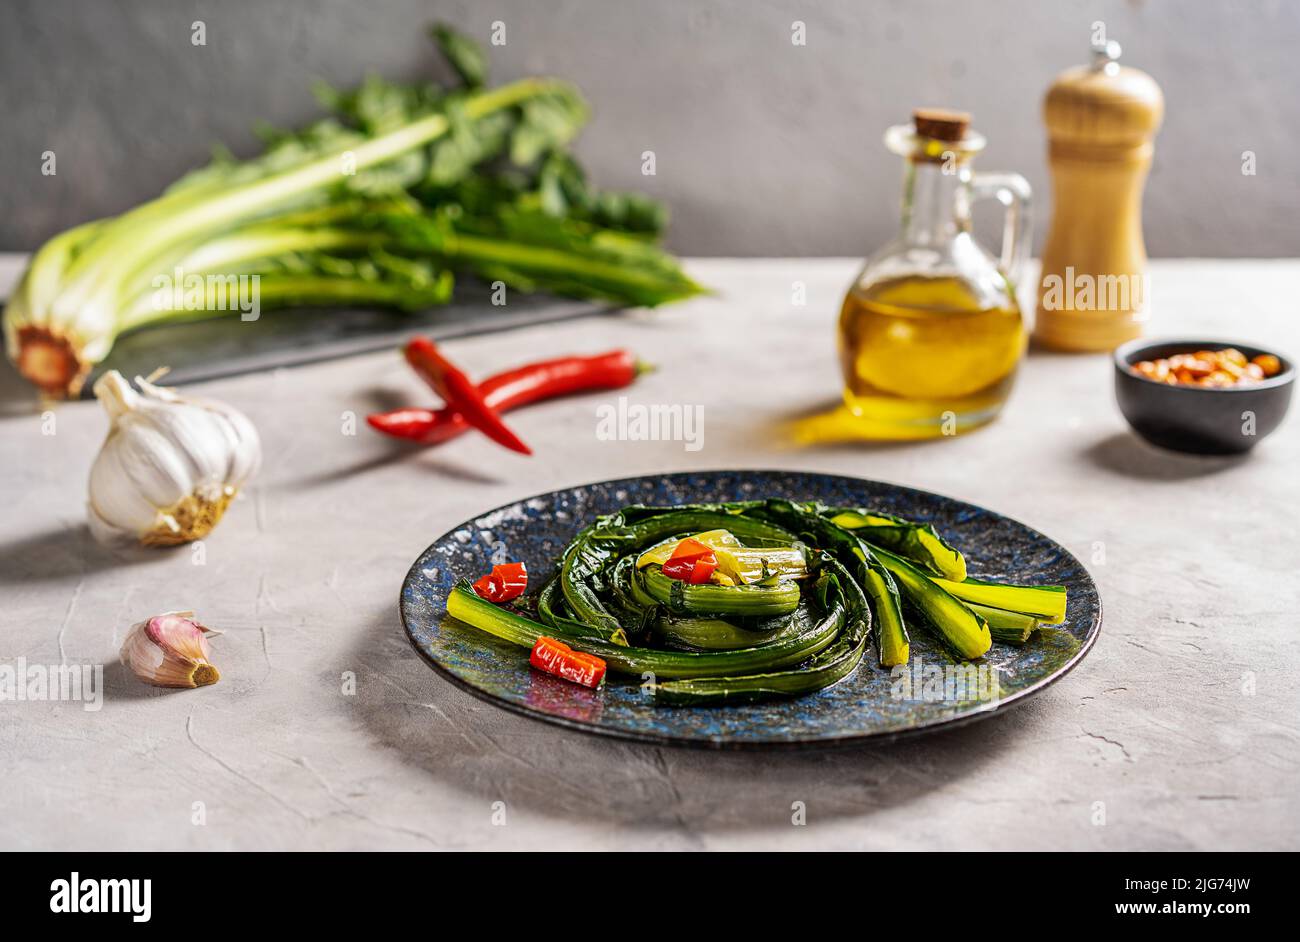 Zichorien-Grüns mit Knoblauch und heißem rotem Papier auf blauem Teller mit Zutaten beiseite geschmort. Stockfoto